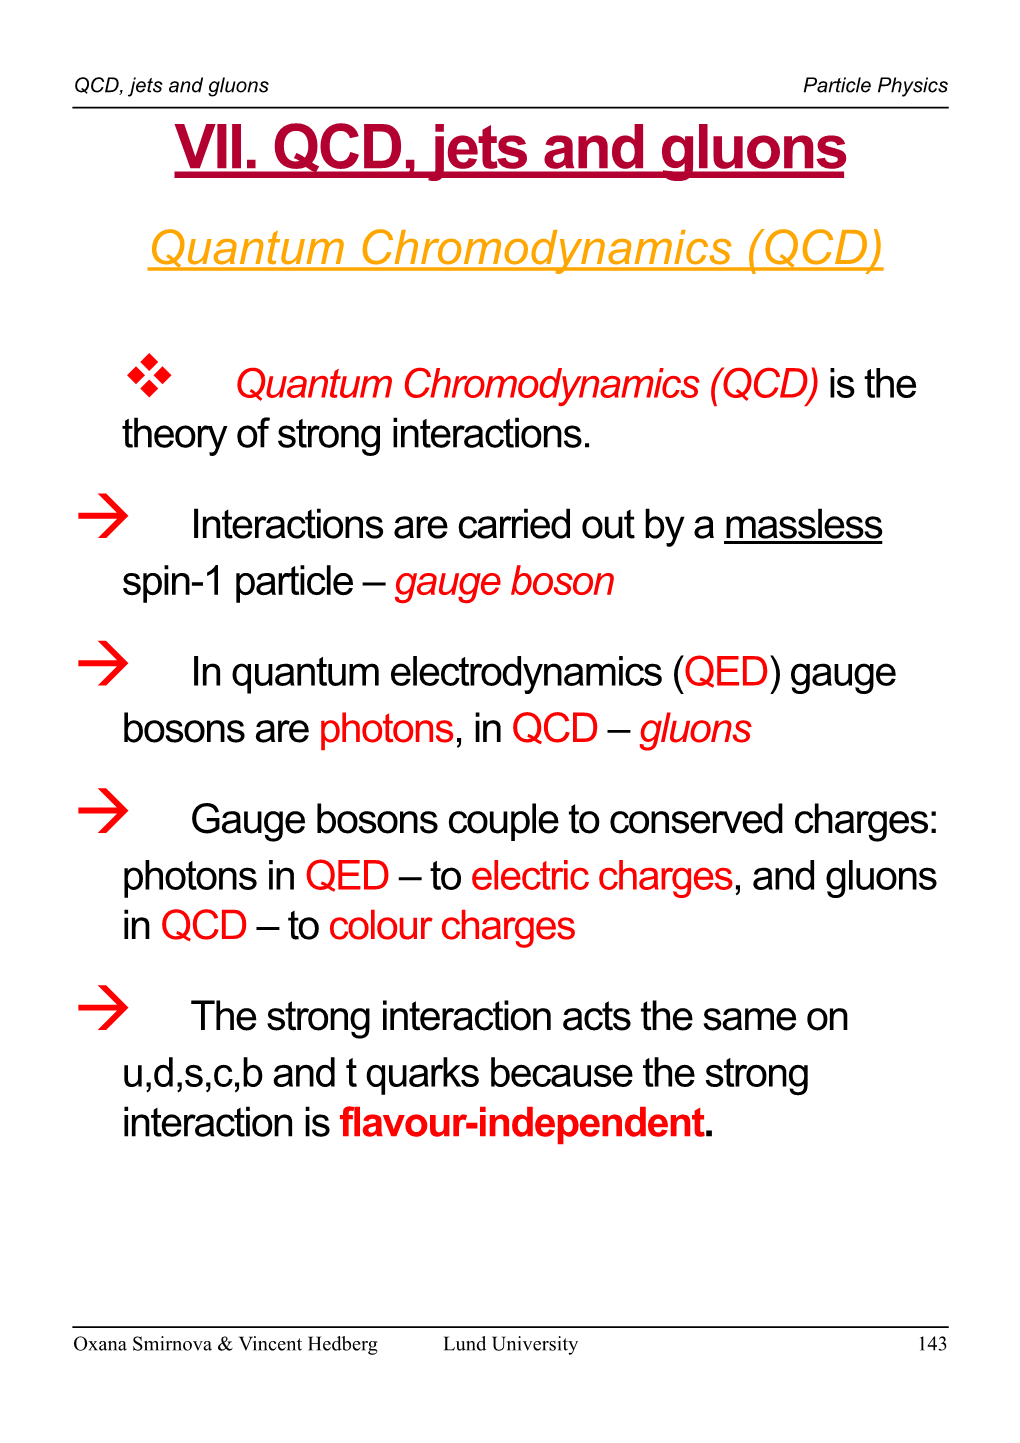 VII. QCD, Jets and Gluons Quantum Chromodynamics (QCD)